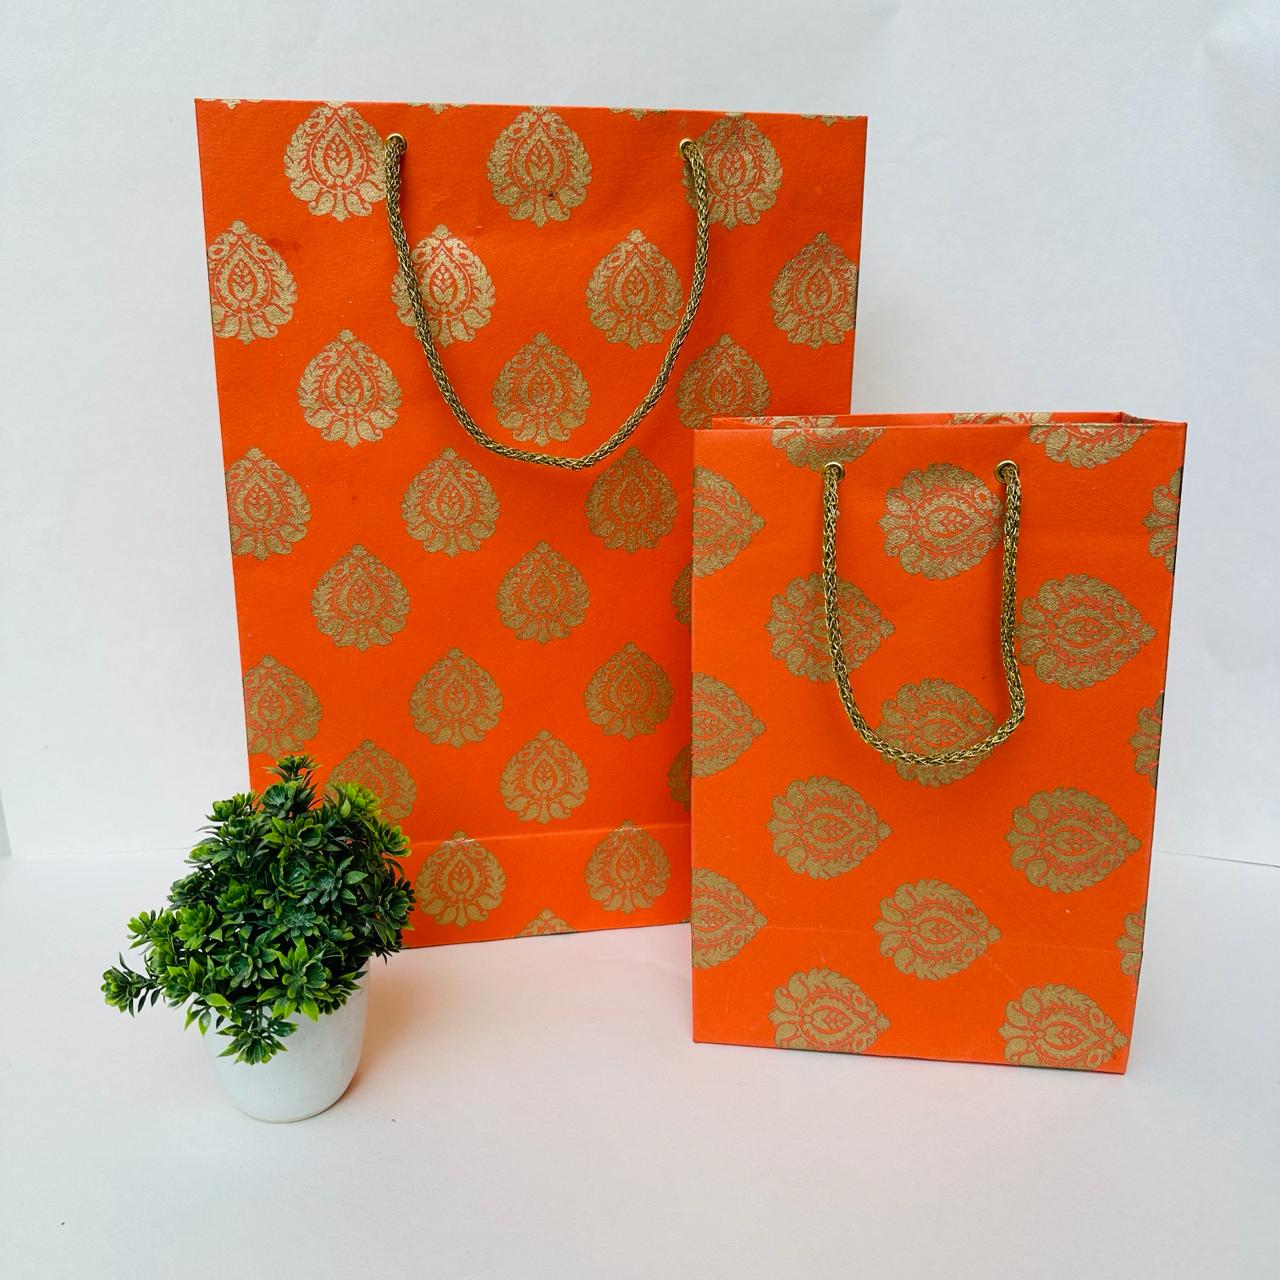 Handmade Paper Bags in Golden Block Print